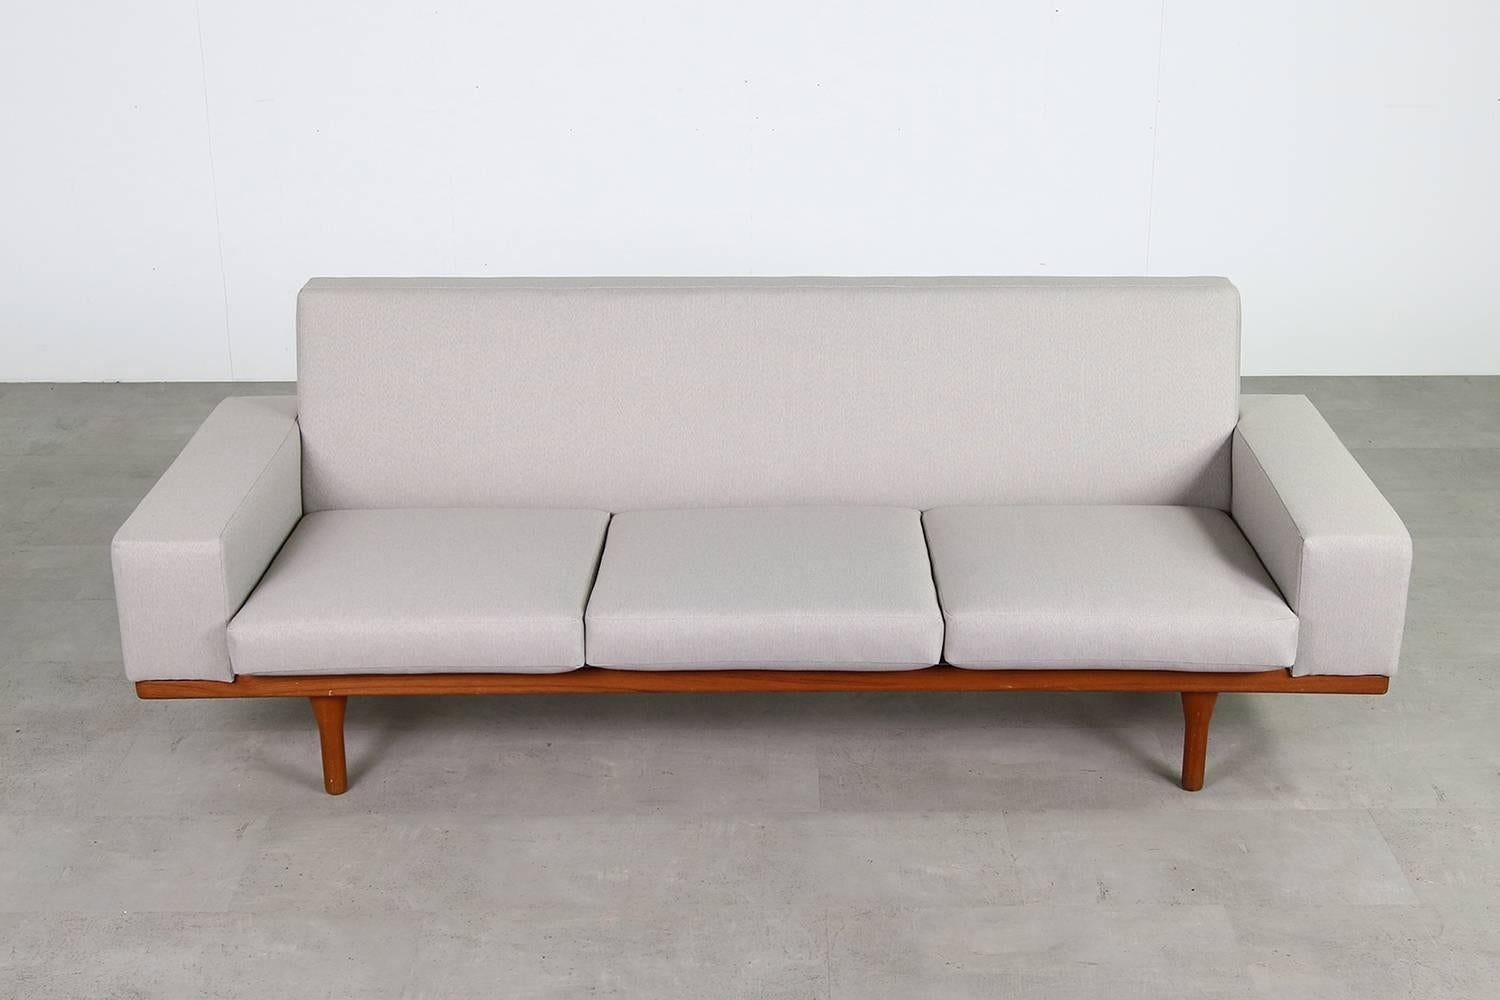 1960s Illum Wikkelso Teak Lounge Sofa Model 50-3 Soren Willadsen Danish Modern For Sale 2